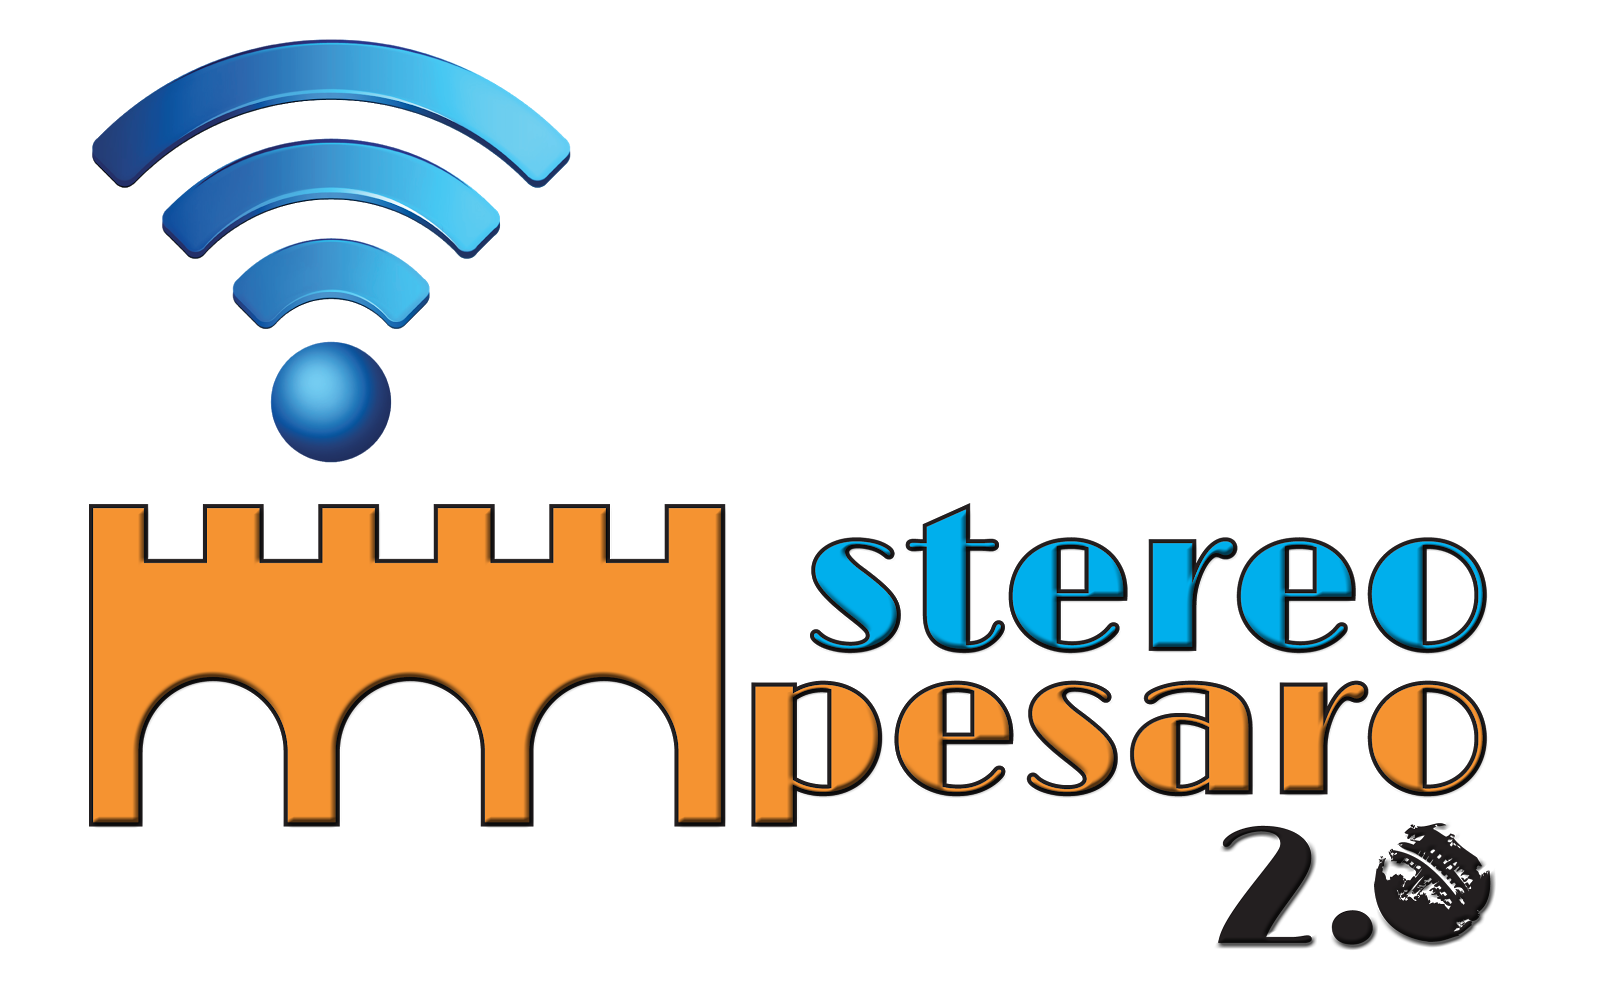 Stereo Pesaro 2.0